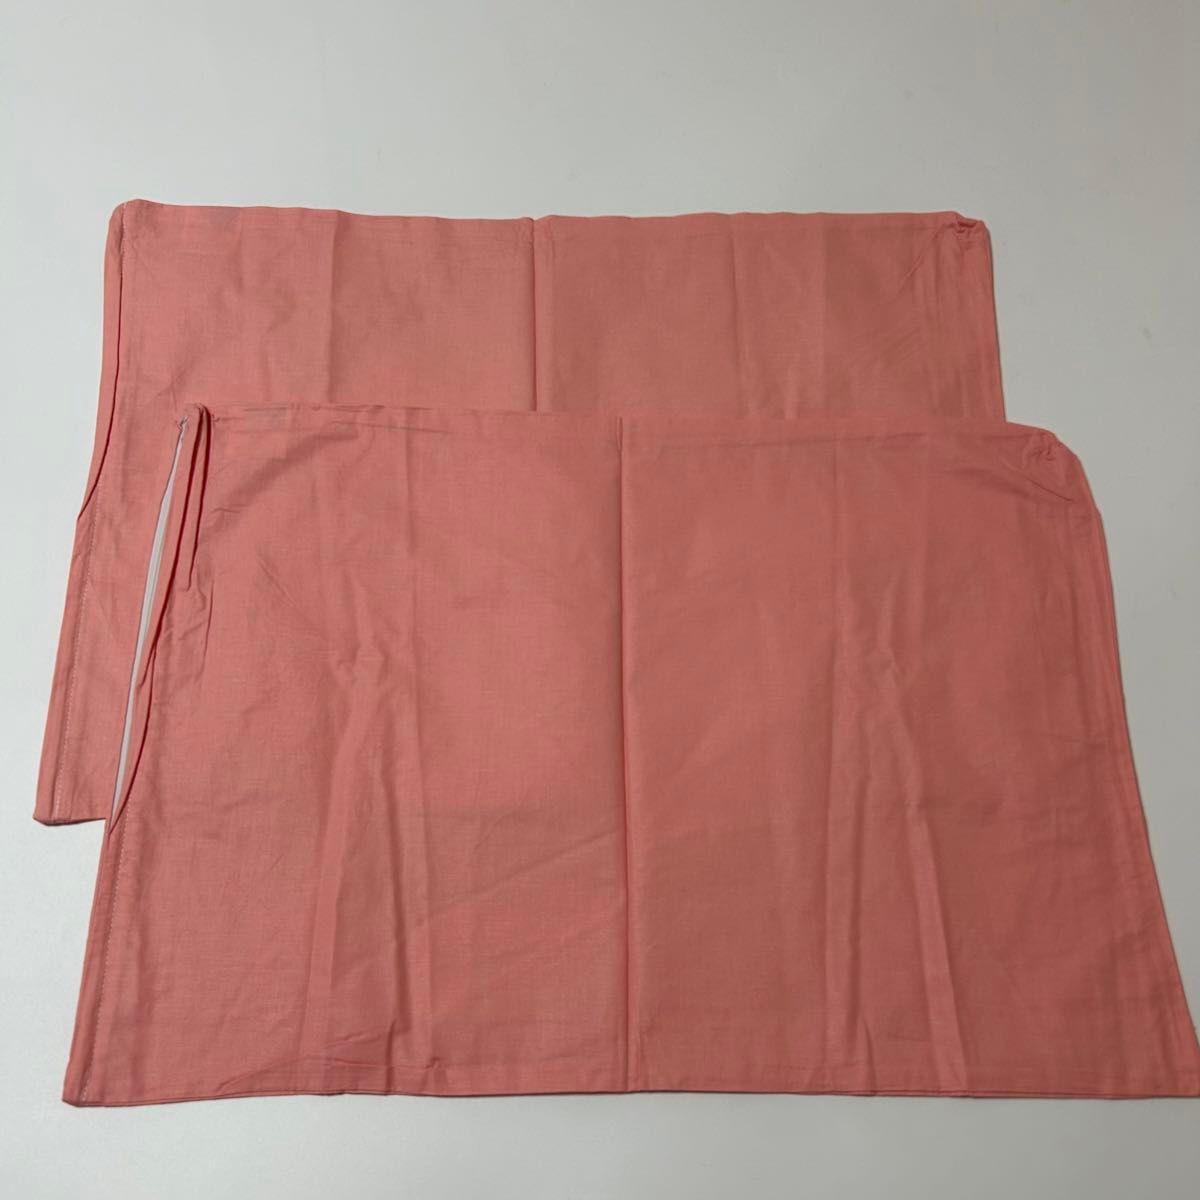 新品未使用 枕カバー 2枚セット サーモンピンク ピロケース 43×63